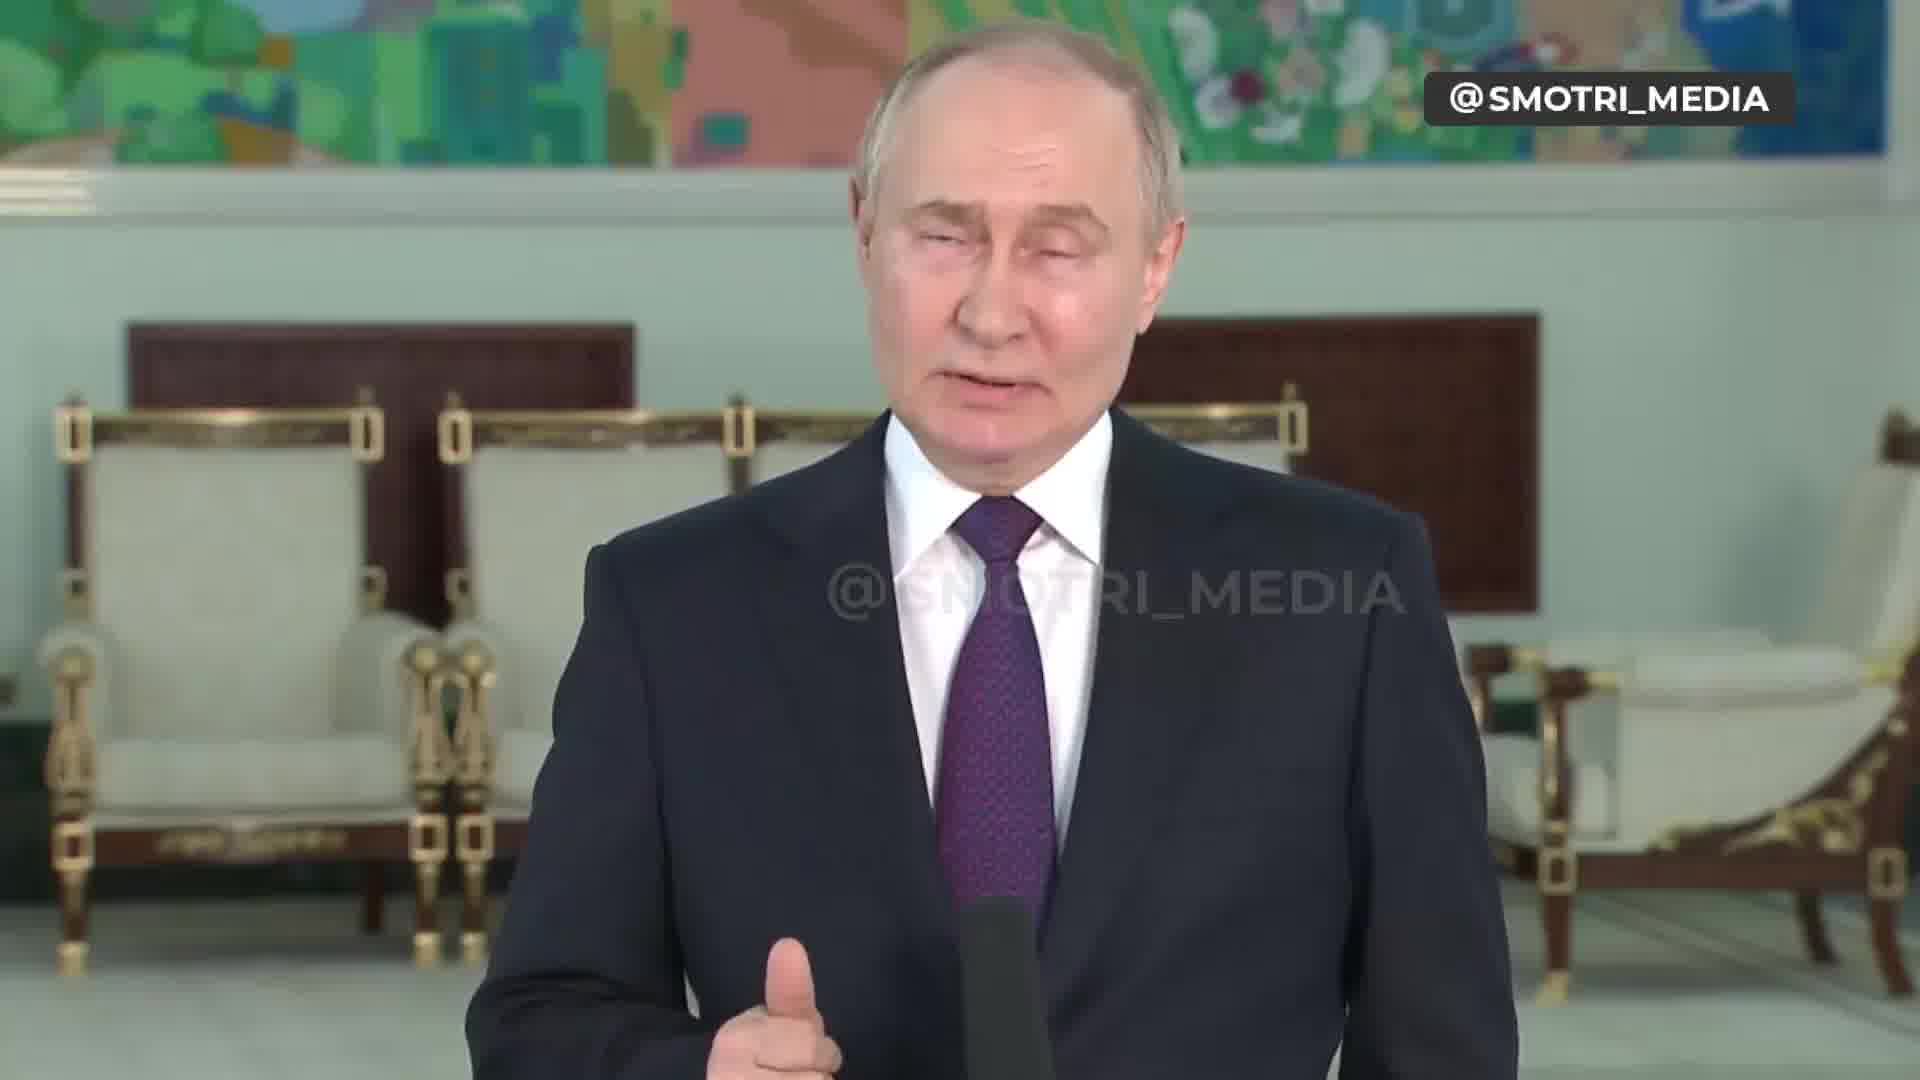 Путин казва, че Върховната рада на Украйна е легитимна и председателят на Върховната рада трябва да бъде действащият президент